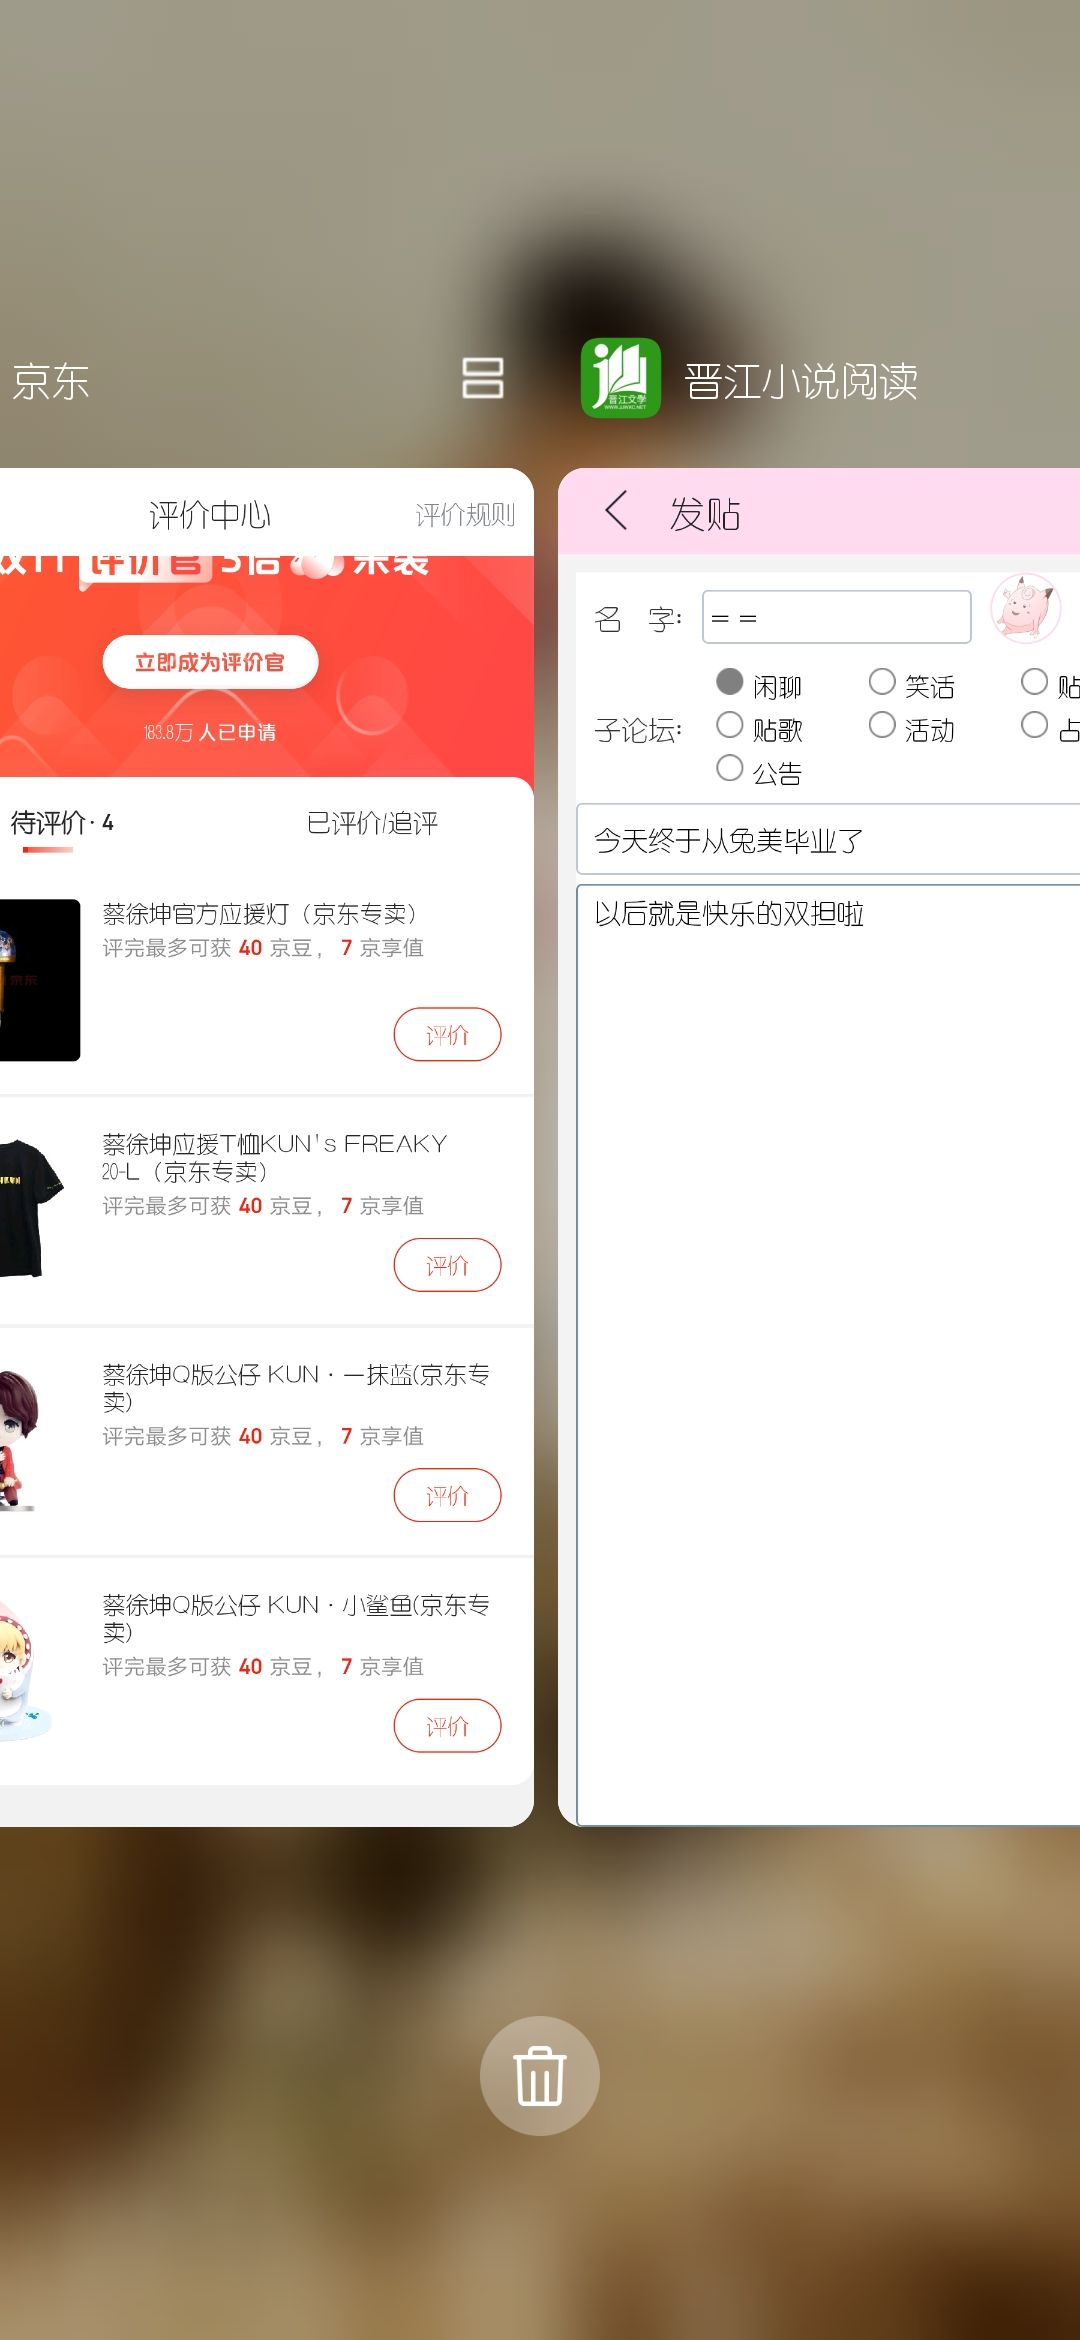 Screenshot_20191013_001305_com_huawei_android_launcher.jpg